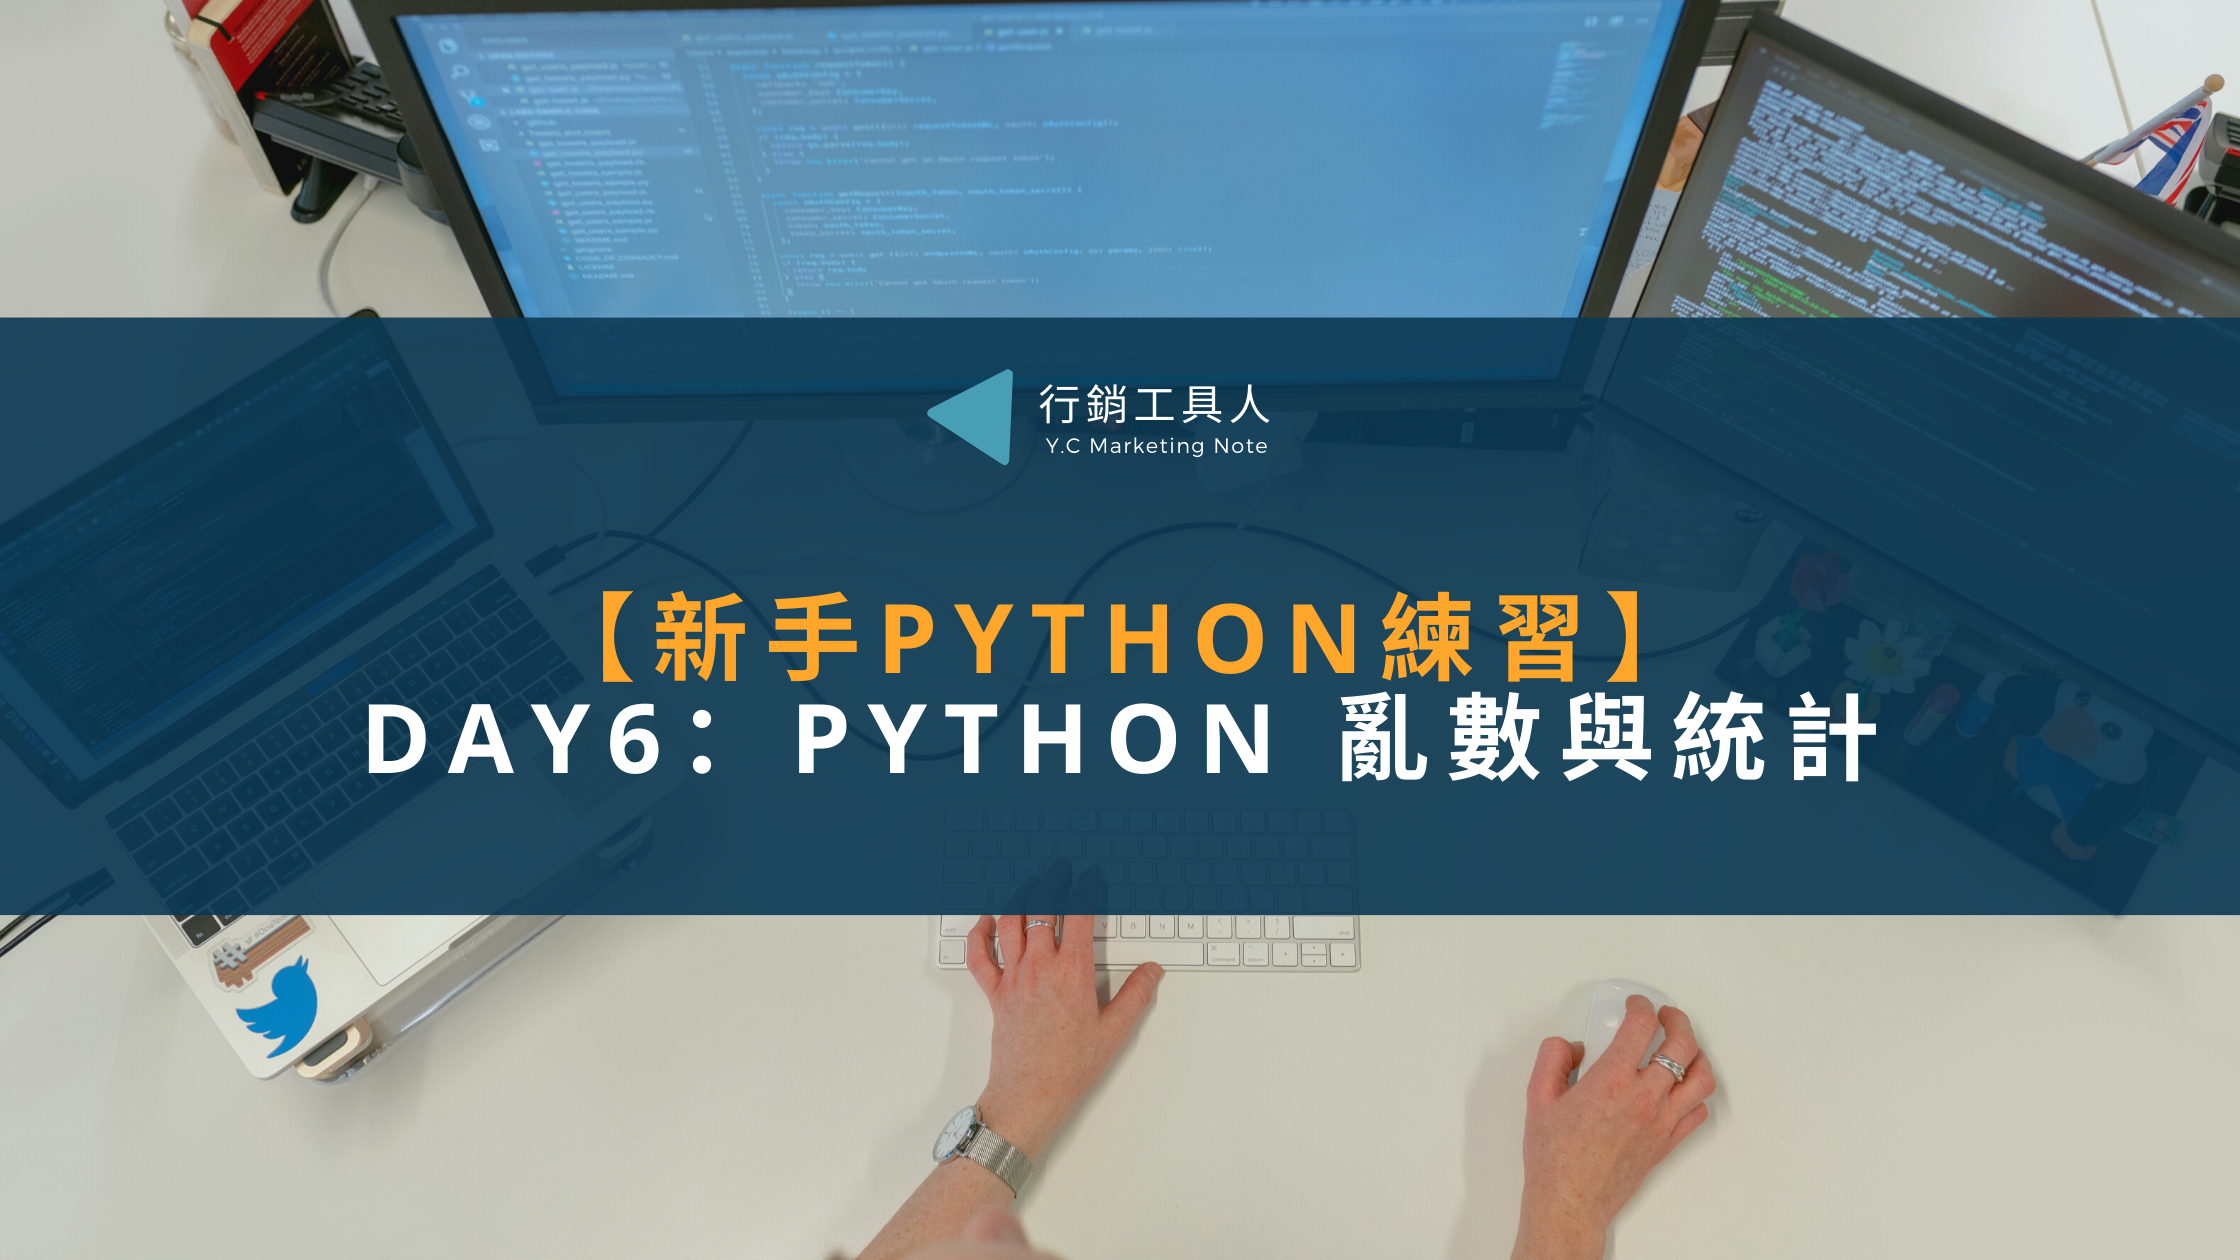 Day6(12/7)：Python 亂數與統計